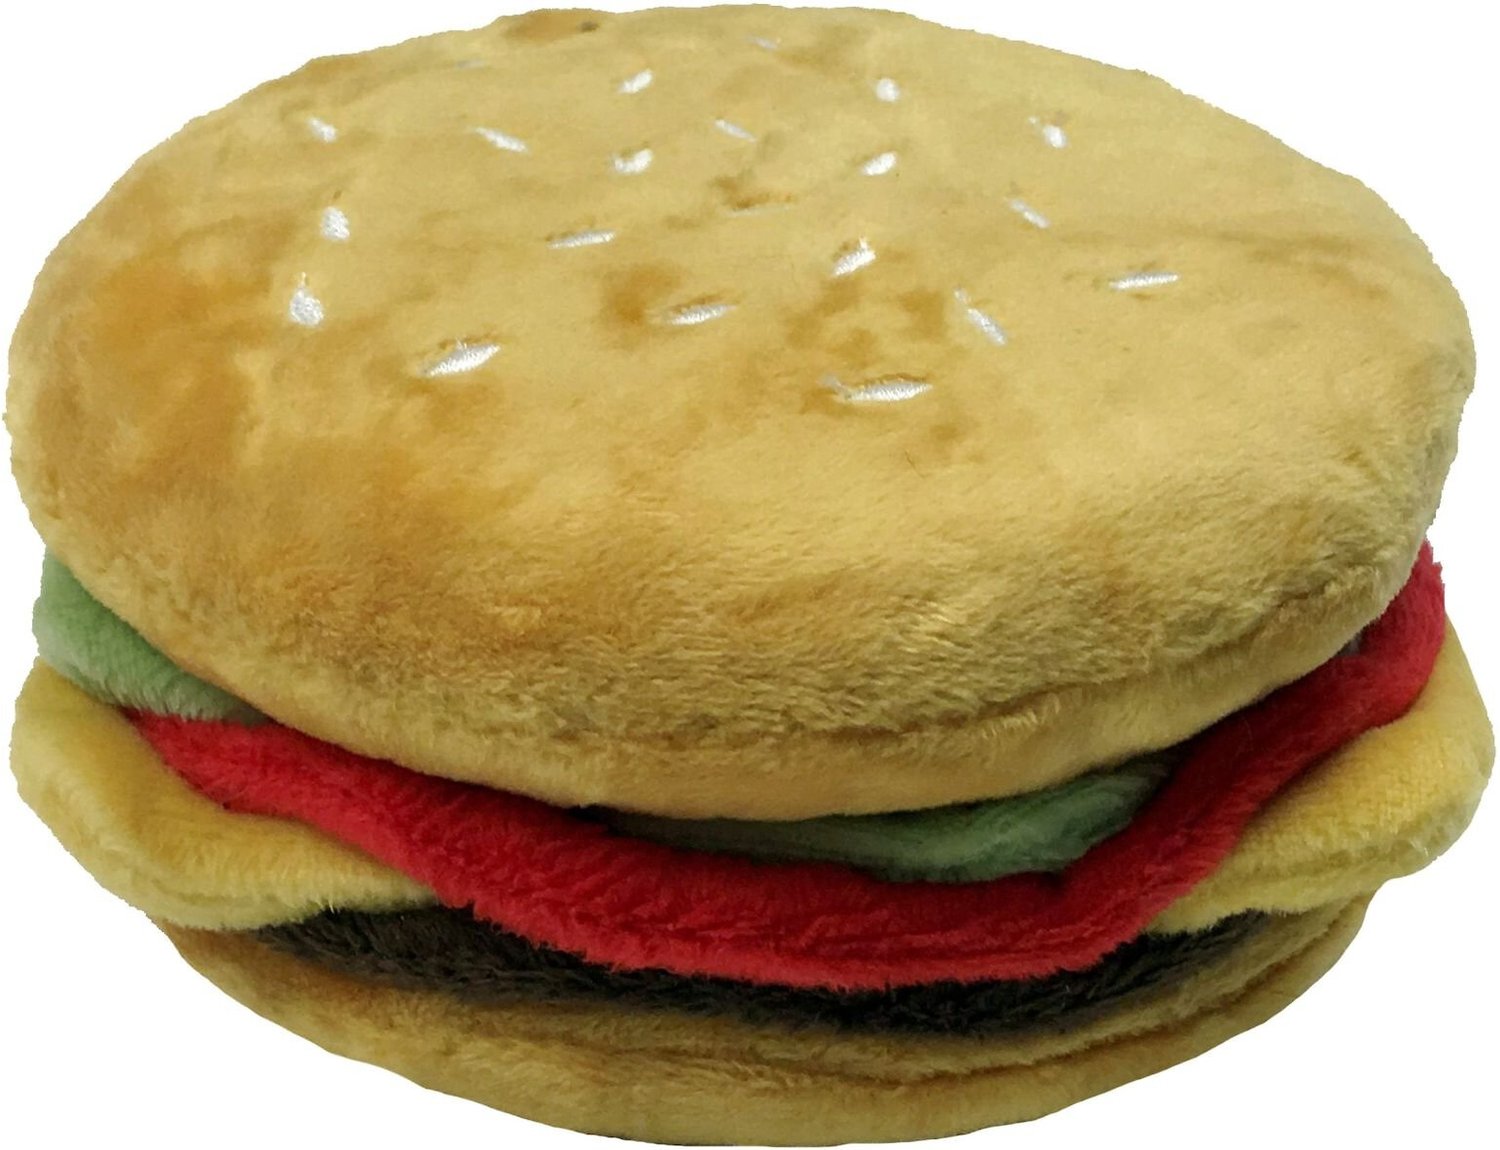 plush hamburger